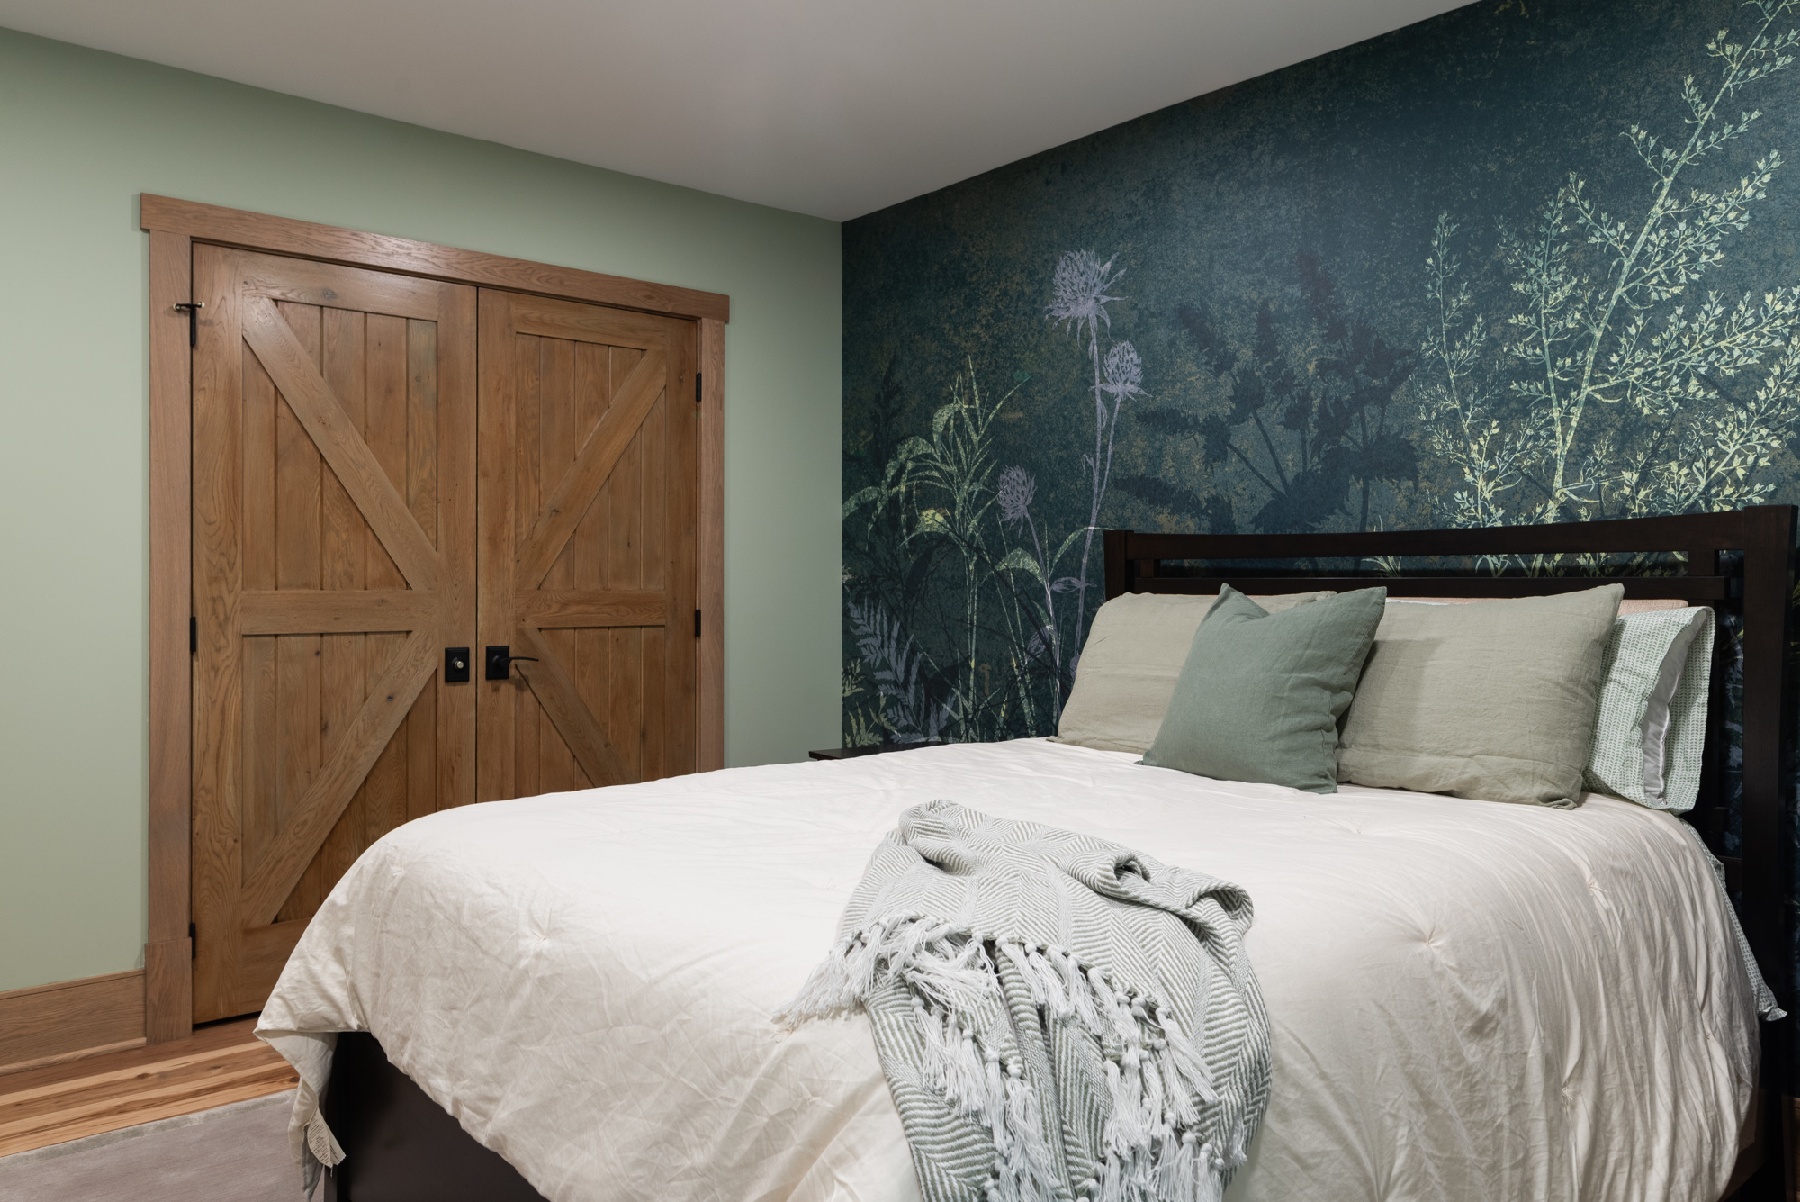 green wallpaper in bedroom